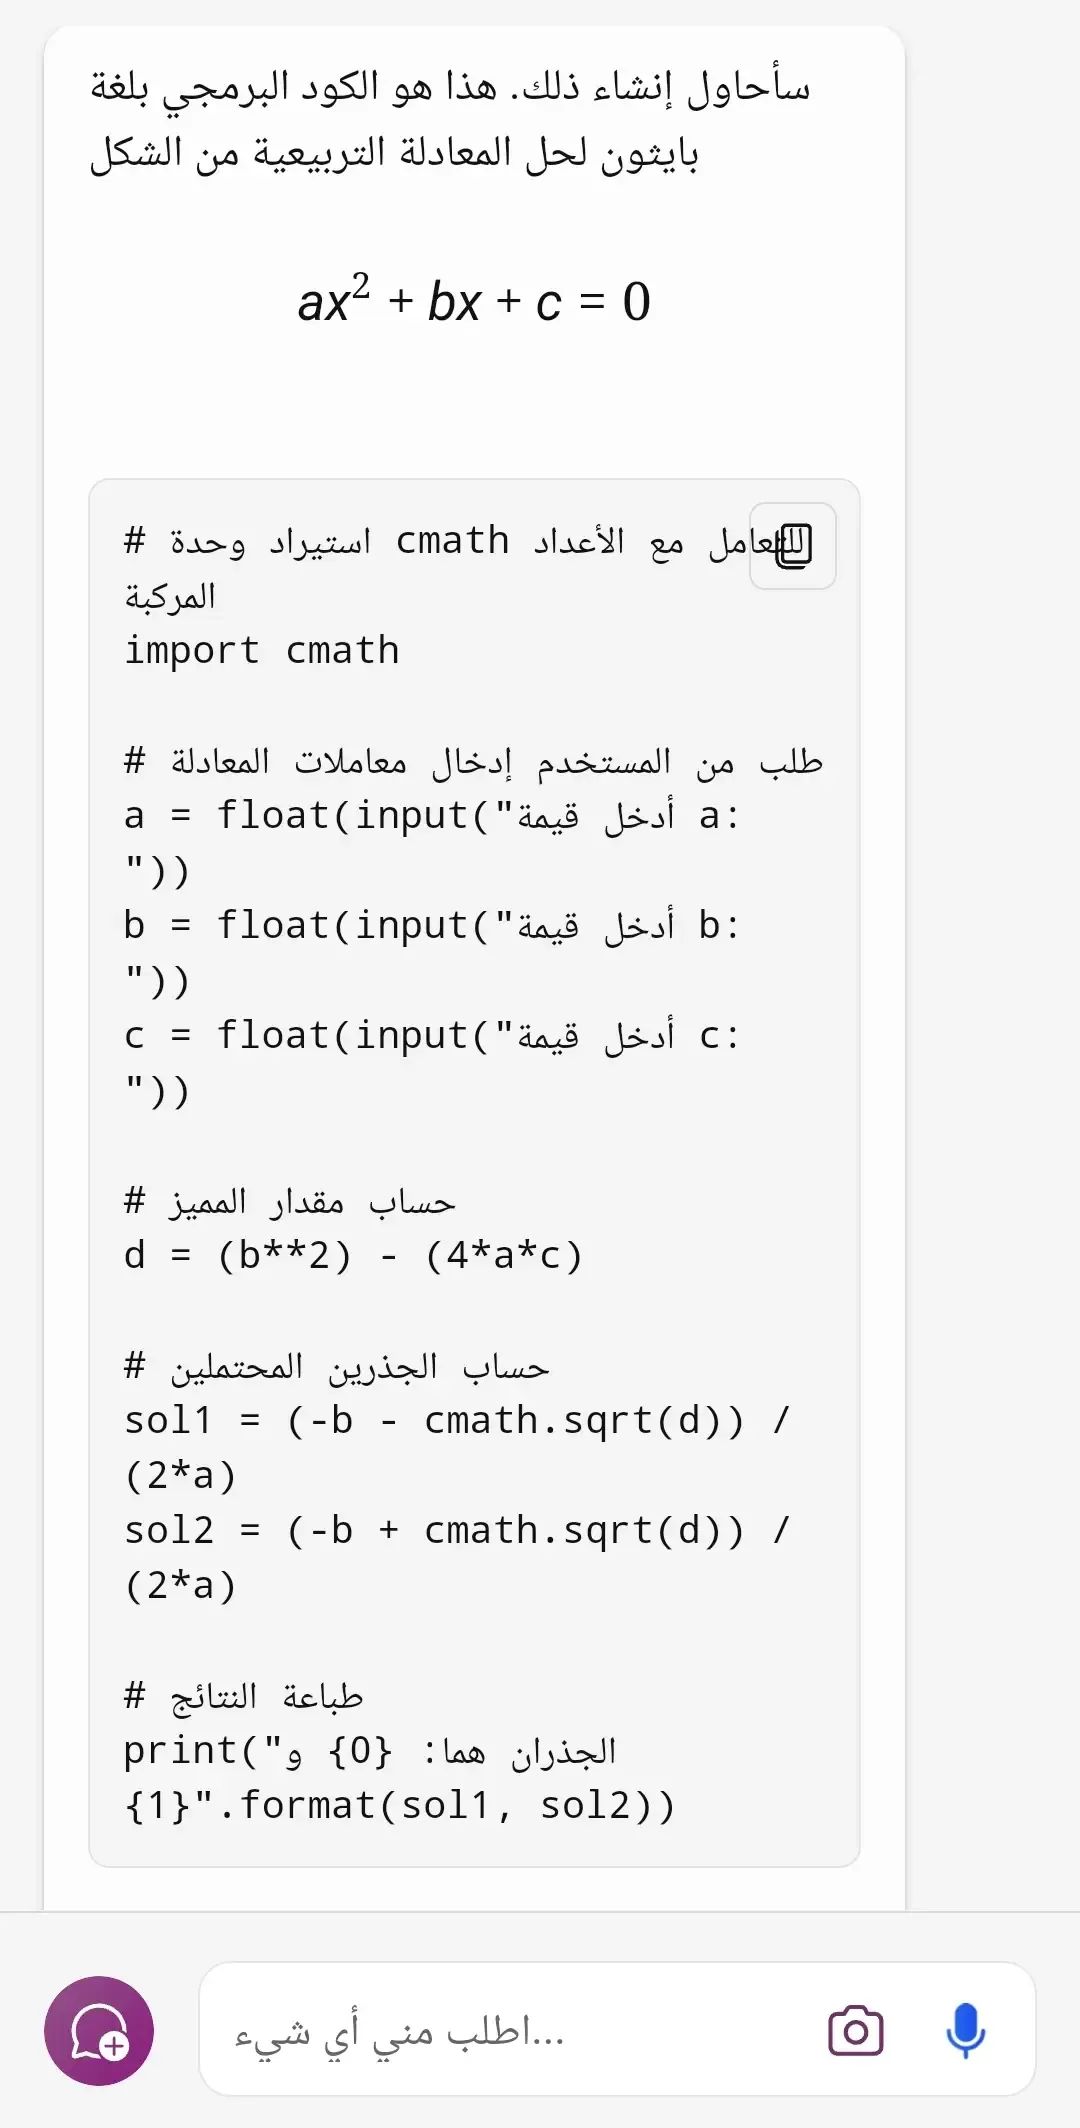 حل المعادلات وكتابة الأكواد البرمجية  بواسطة تطبيق Microsoft copilot